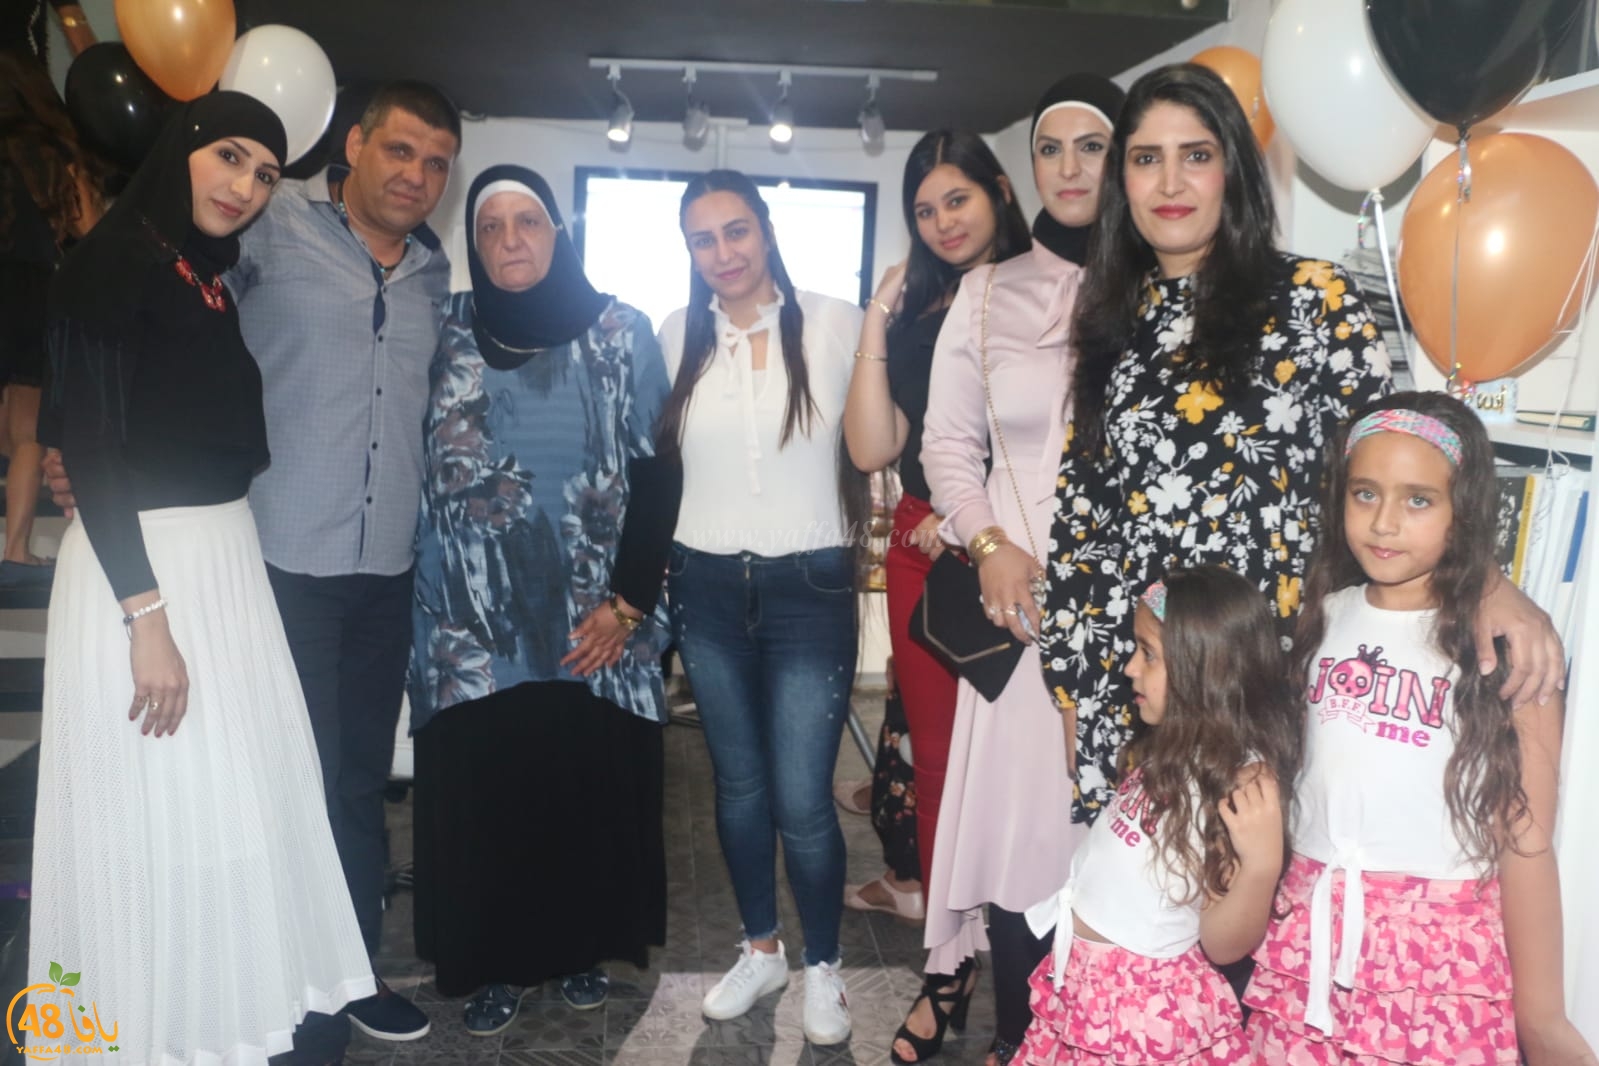  بالصور: افتتاح مكتب jaffa state للعقارات والسياحة في مدينة يافا 